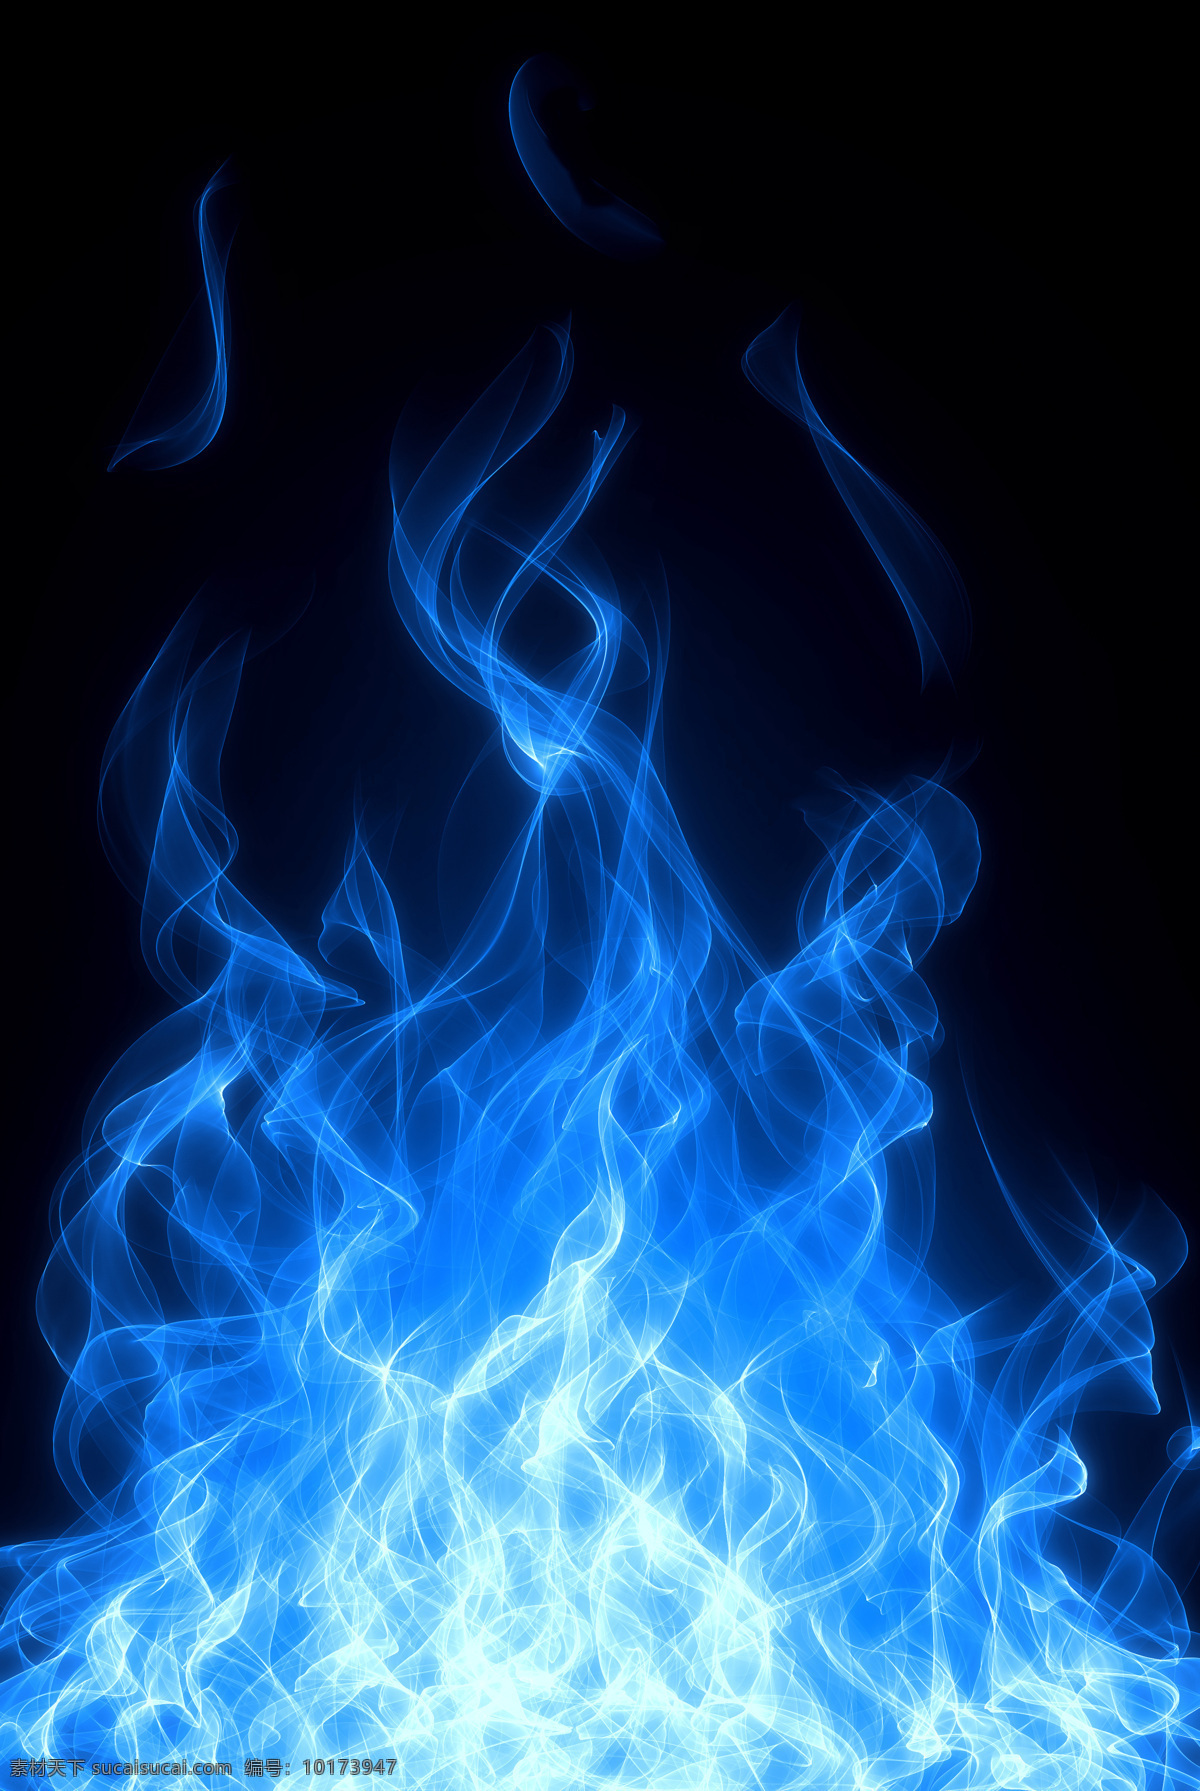 梦幻 蓝色 火焰 梦幻火焰背景 蓝色火焰 燃烧 火苗 火焰图片 生活百科